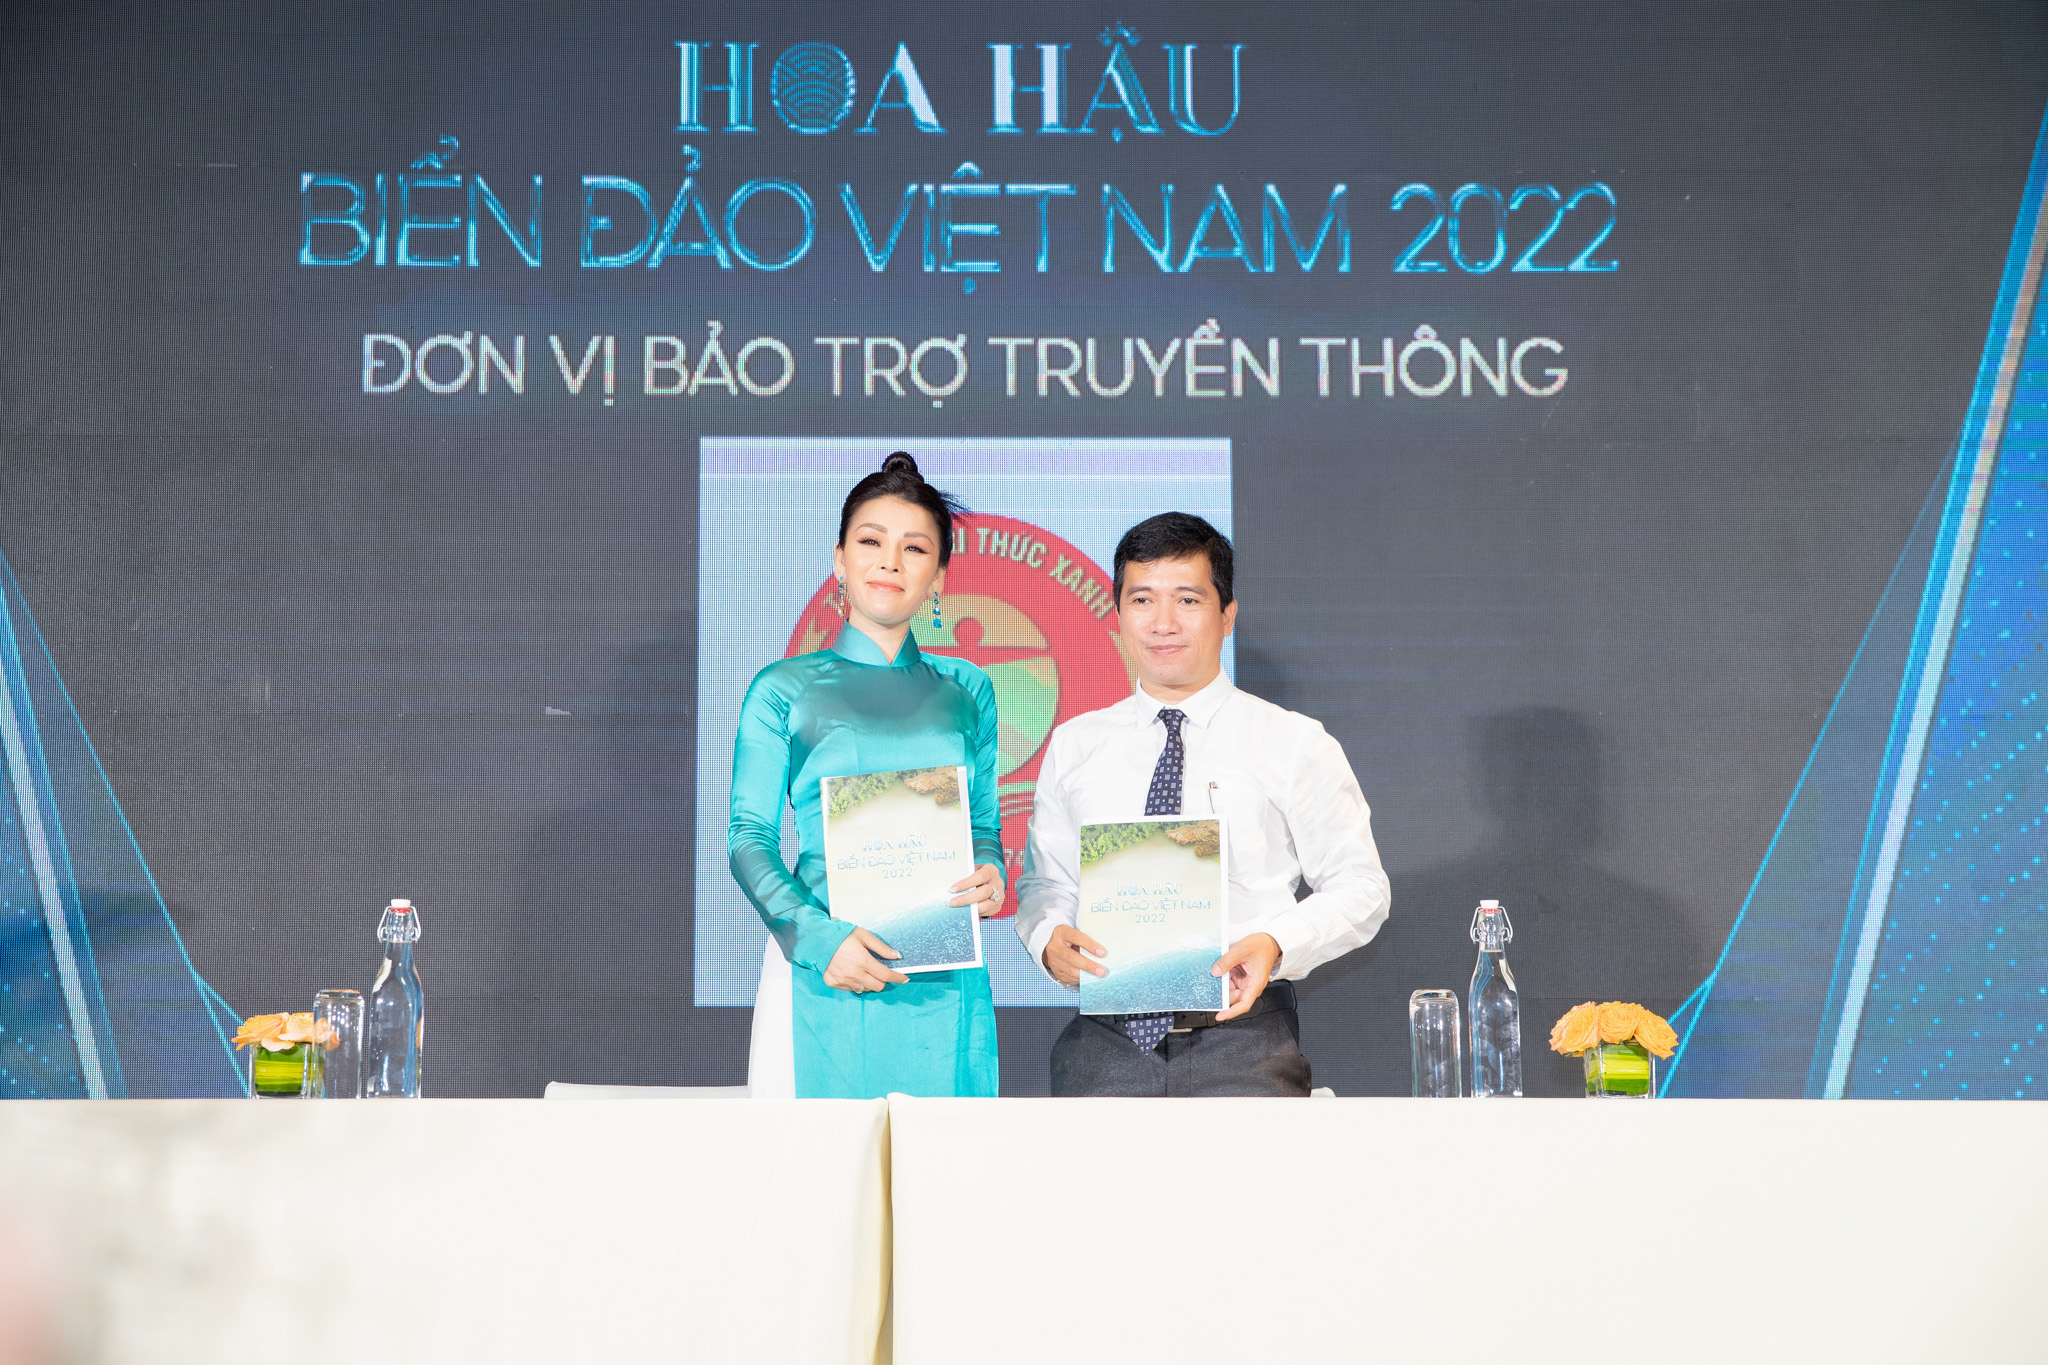 Tạp chí Tri Thức Xanh bảo trợ truyền thông cho cuộc thi Hoa hậu biển đảo Việt Nam 2022